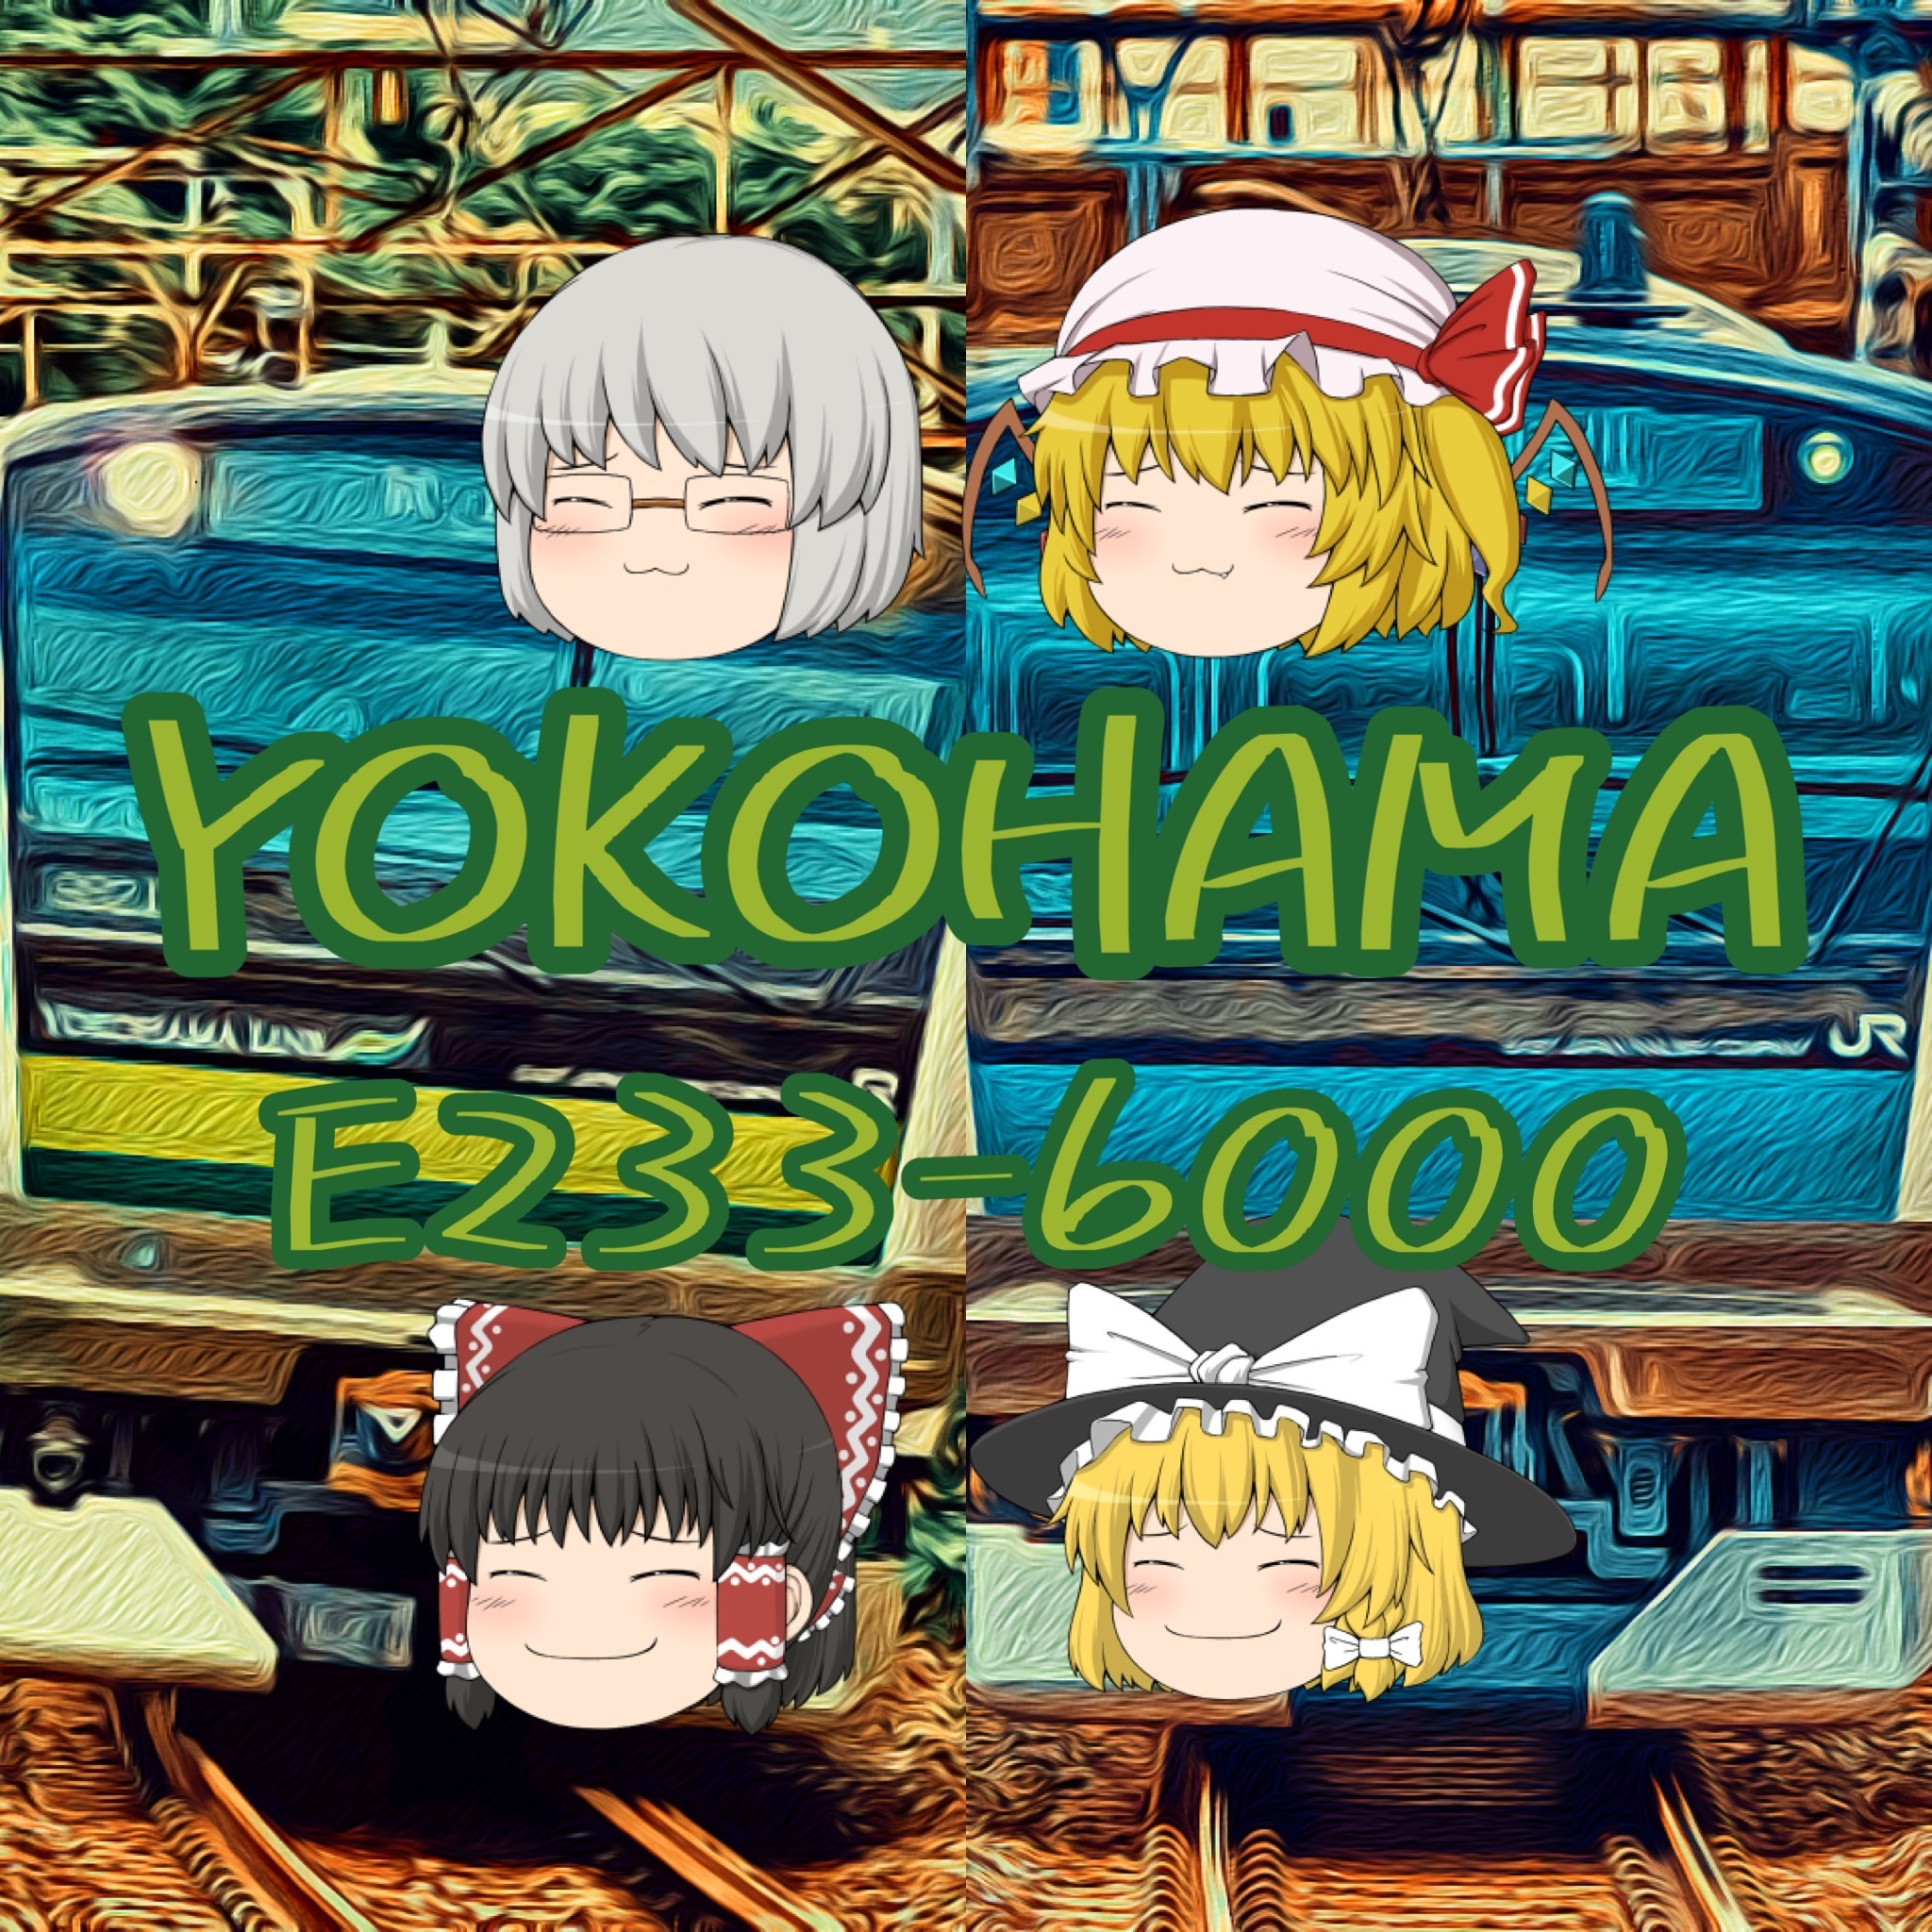 YOKOHAMA E233-6000